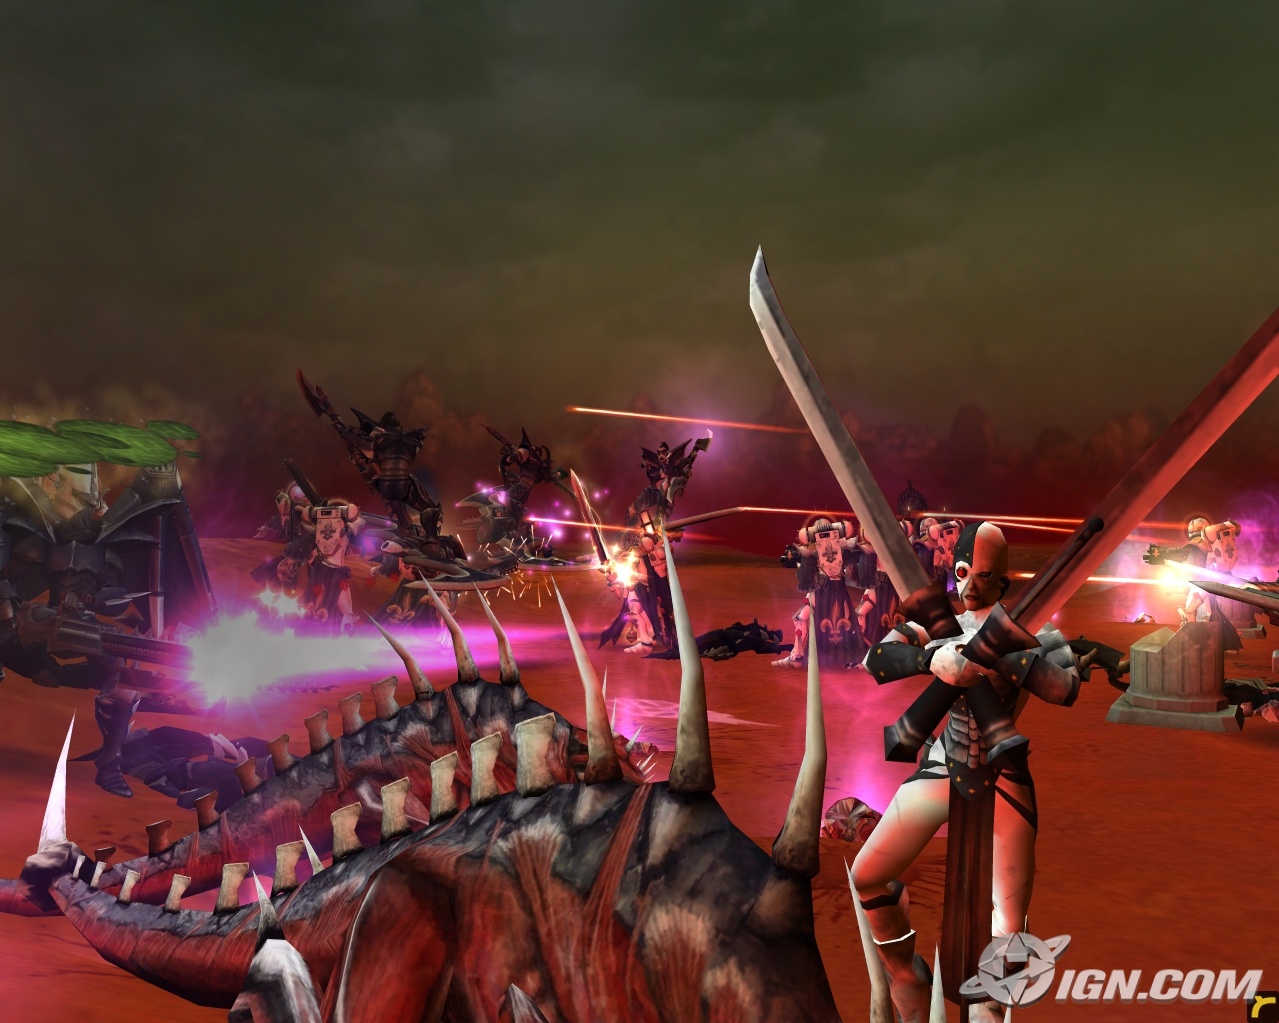 download warhammer 40k dawn of war 3 steam for free